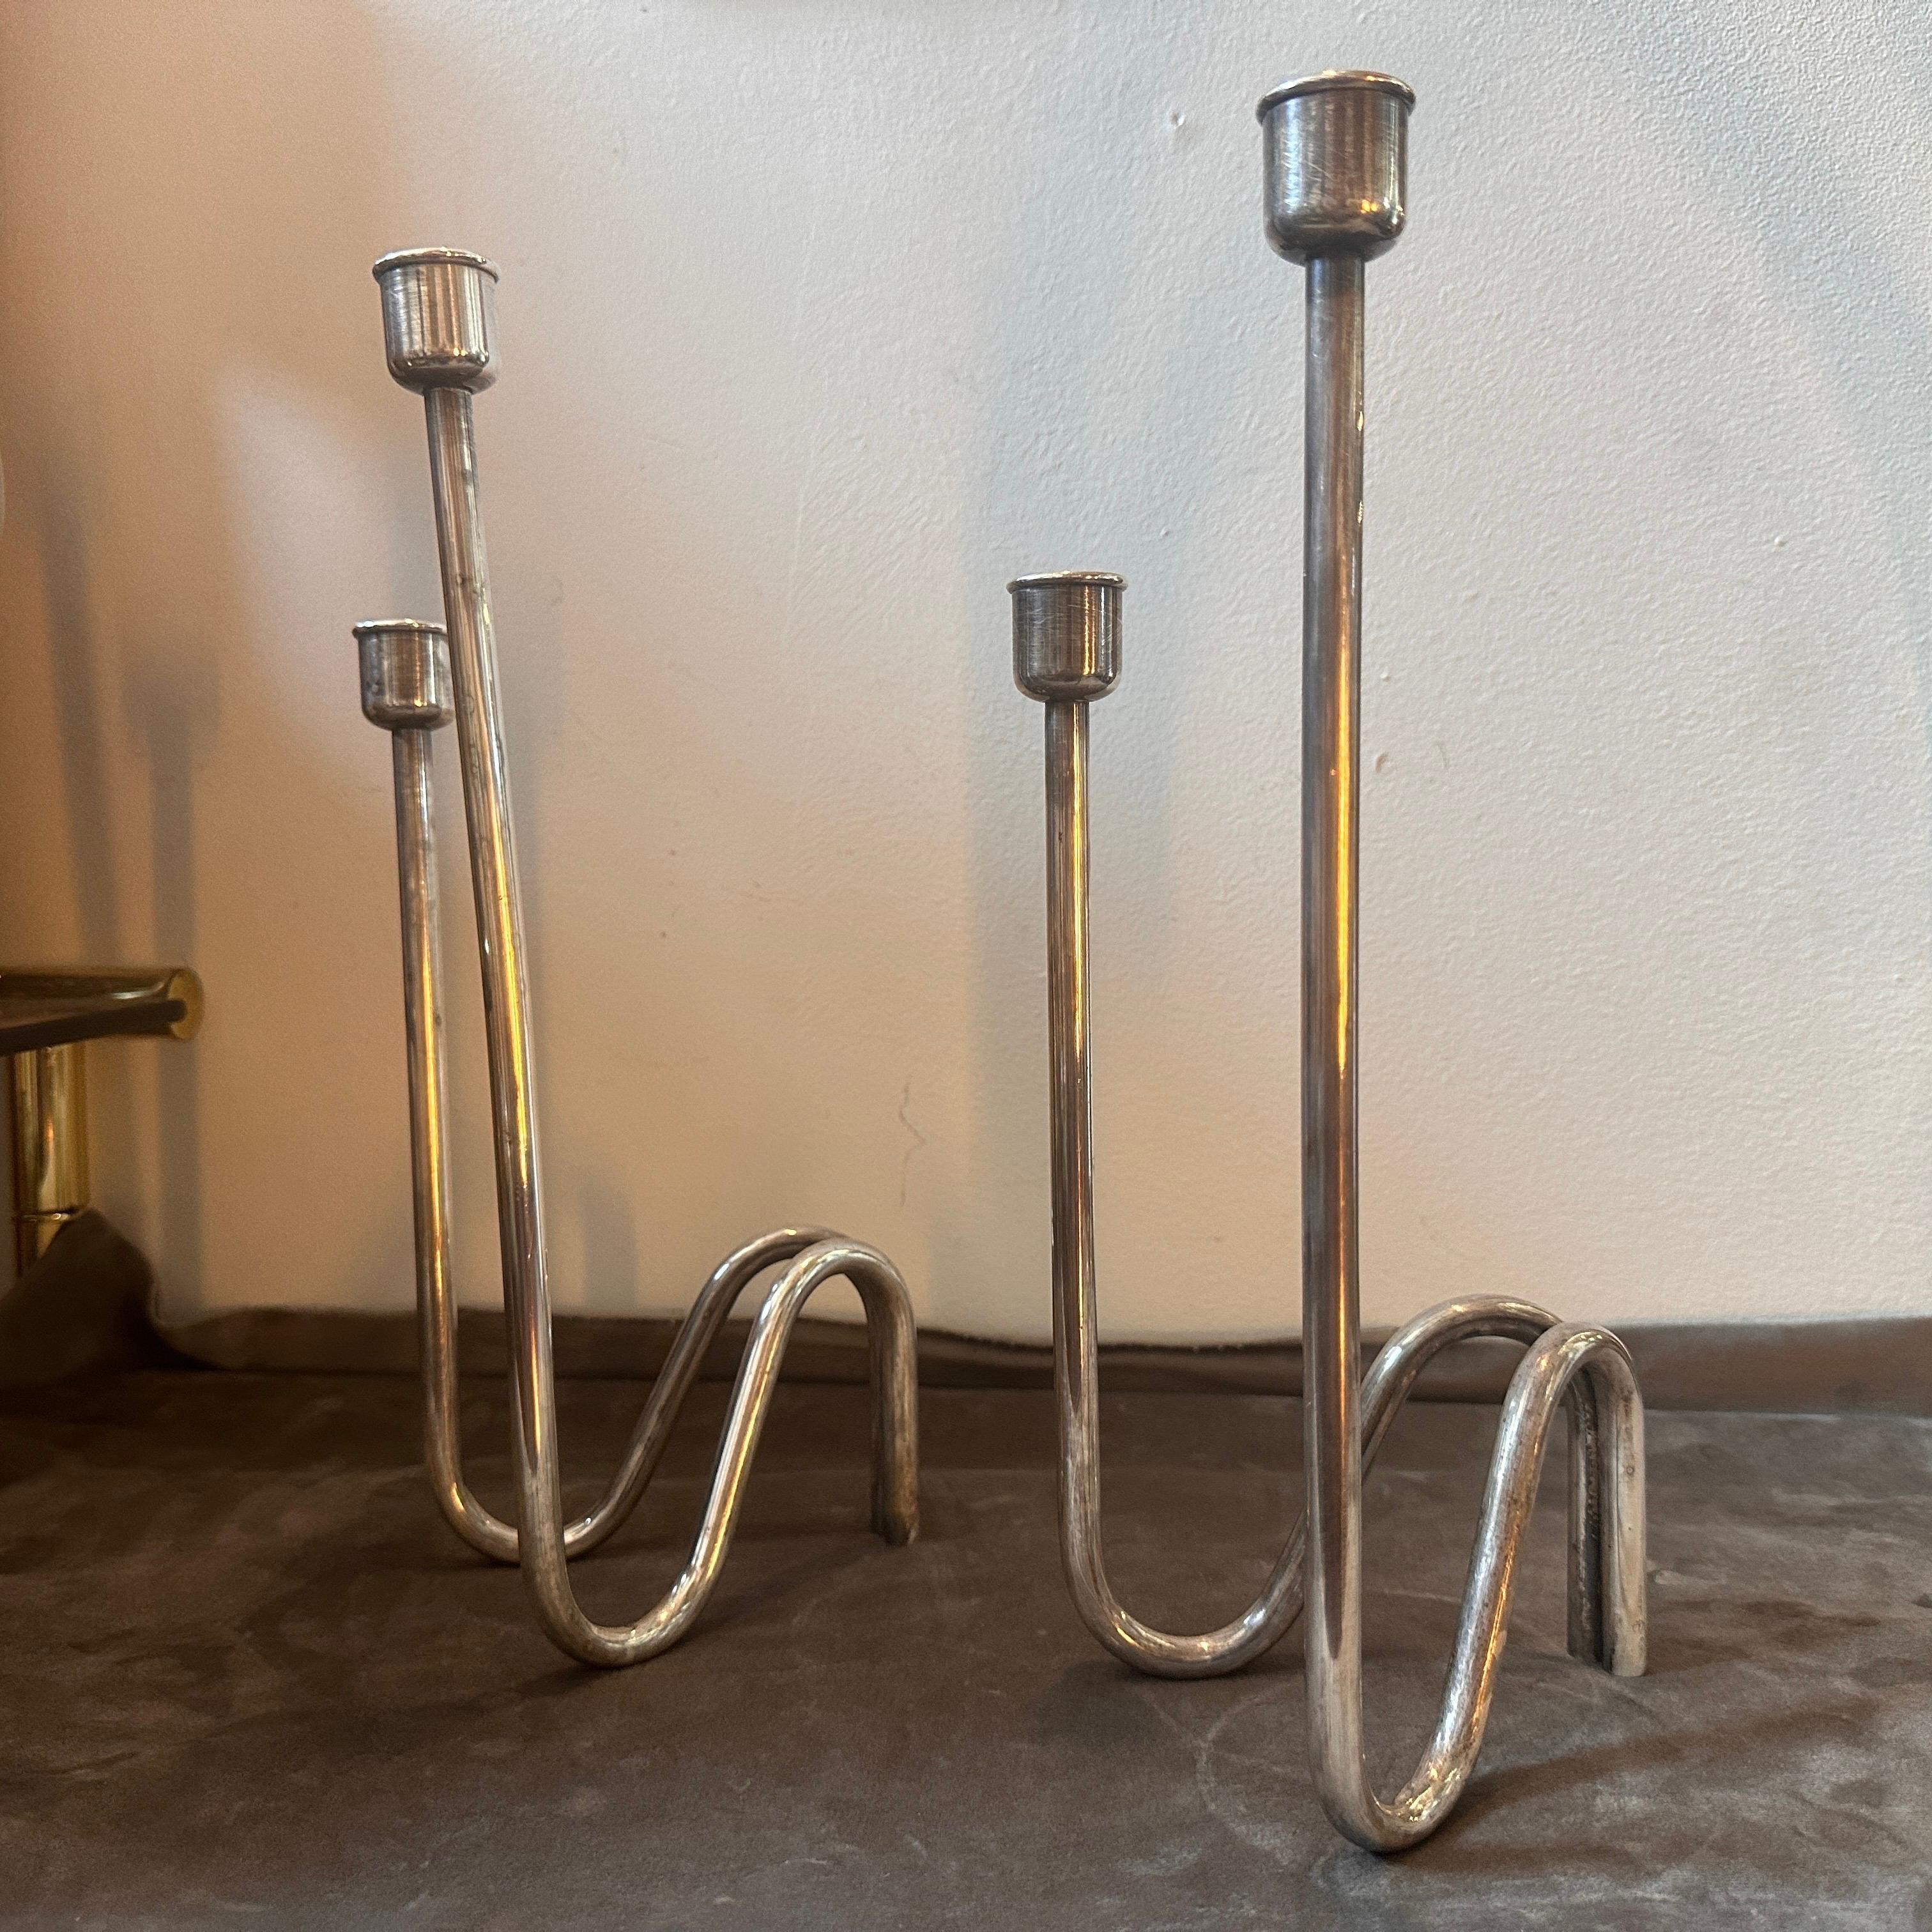 Deux bougeoirs en métal argenté conçus par Lino Sabattini et fabriqués par Sabattini Argenteria dans les années quatre-vingt. Elles ont été fabriquées en Italie, marquées sur un côté, elles sont en très bon état. Ces candélabres Lino Sabattini